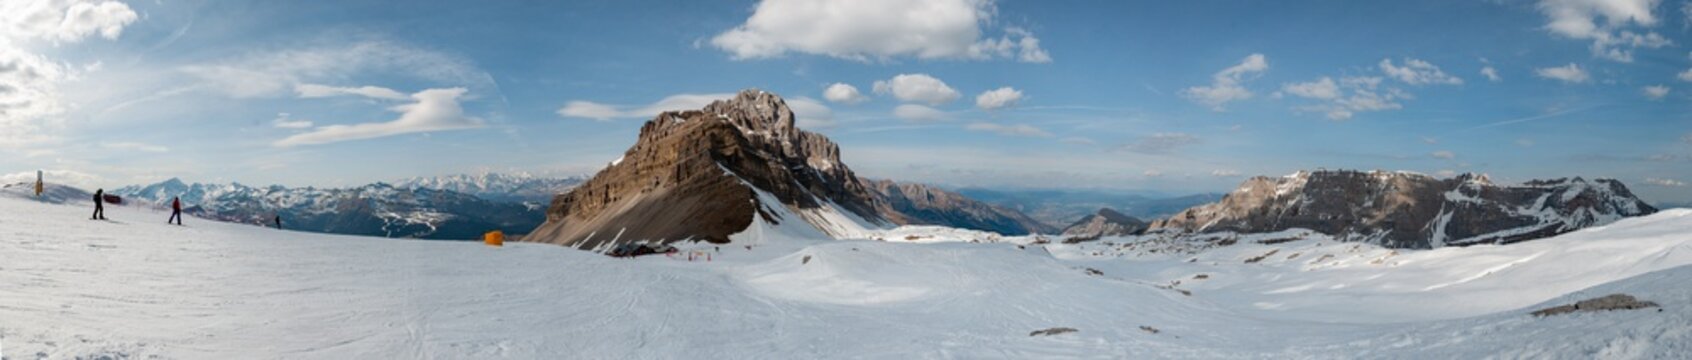 Włochy, góry Alpy, Folgarida © photo-home